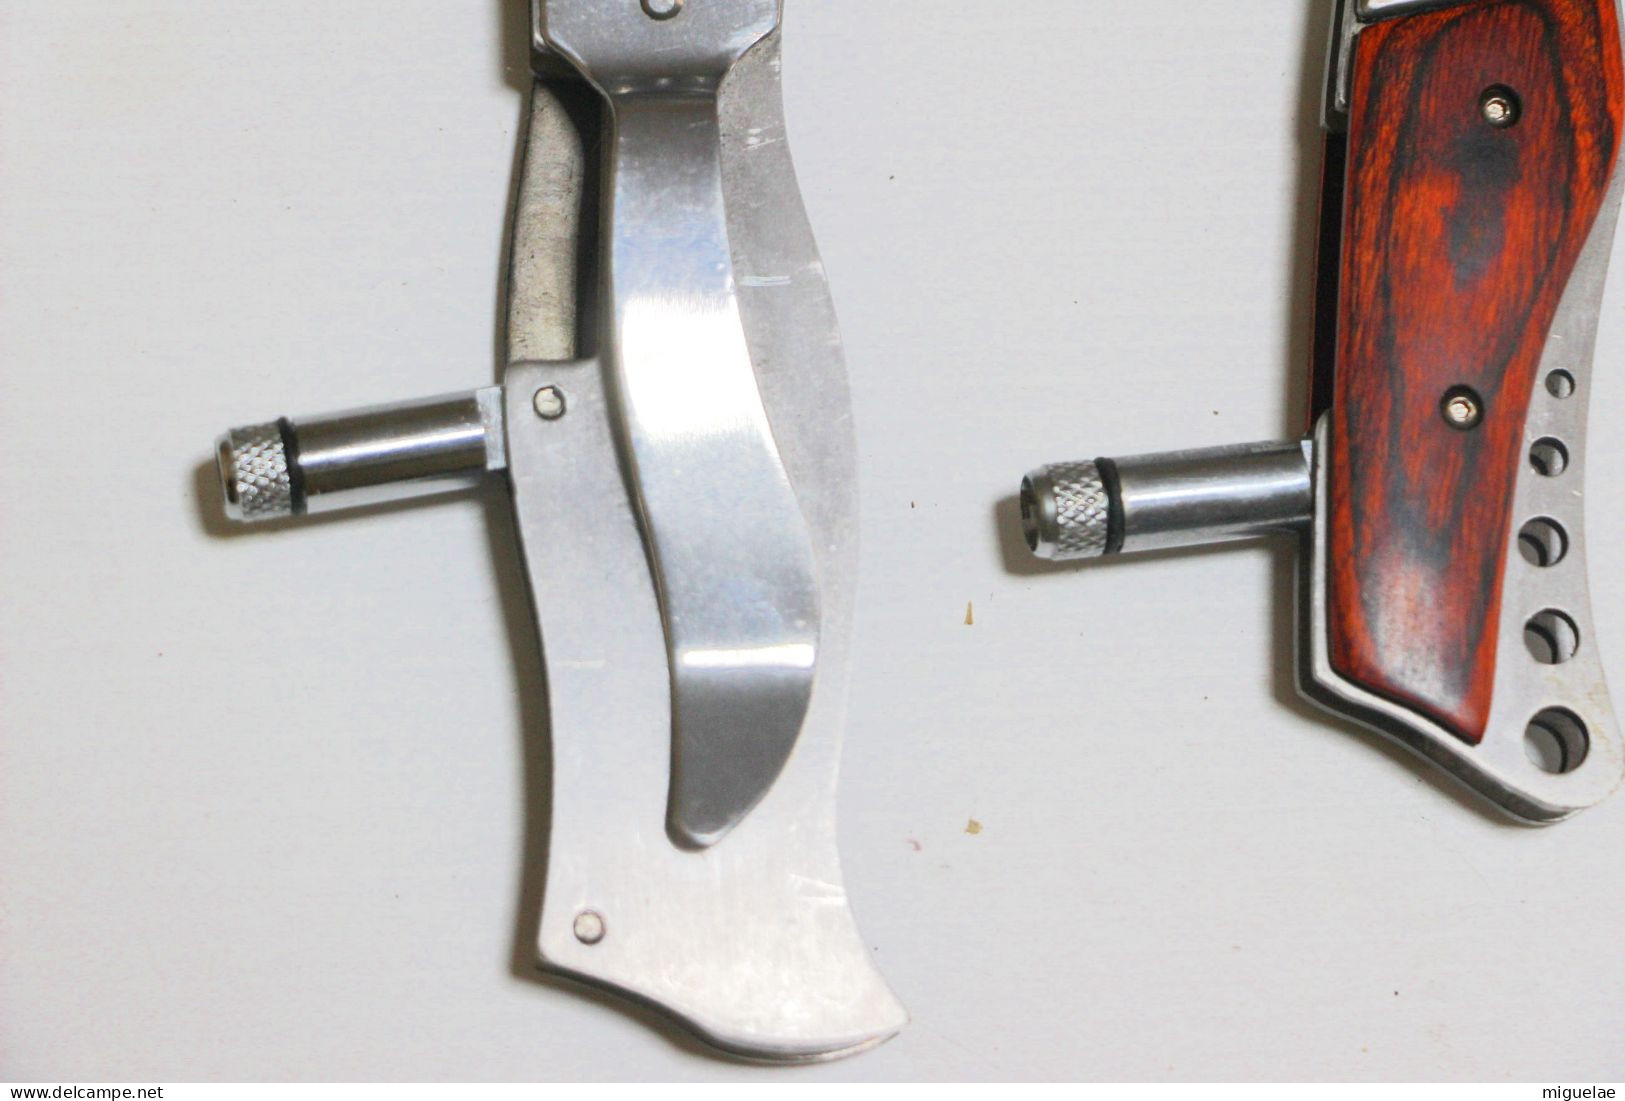 paire de couteaux à ouverture automatique de la marque américaine Taurus